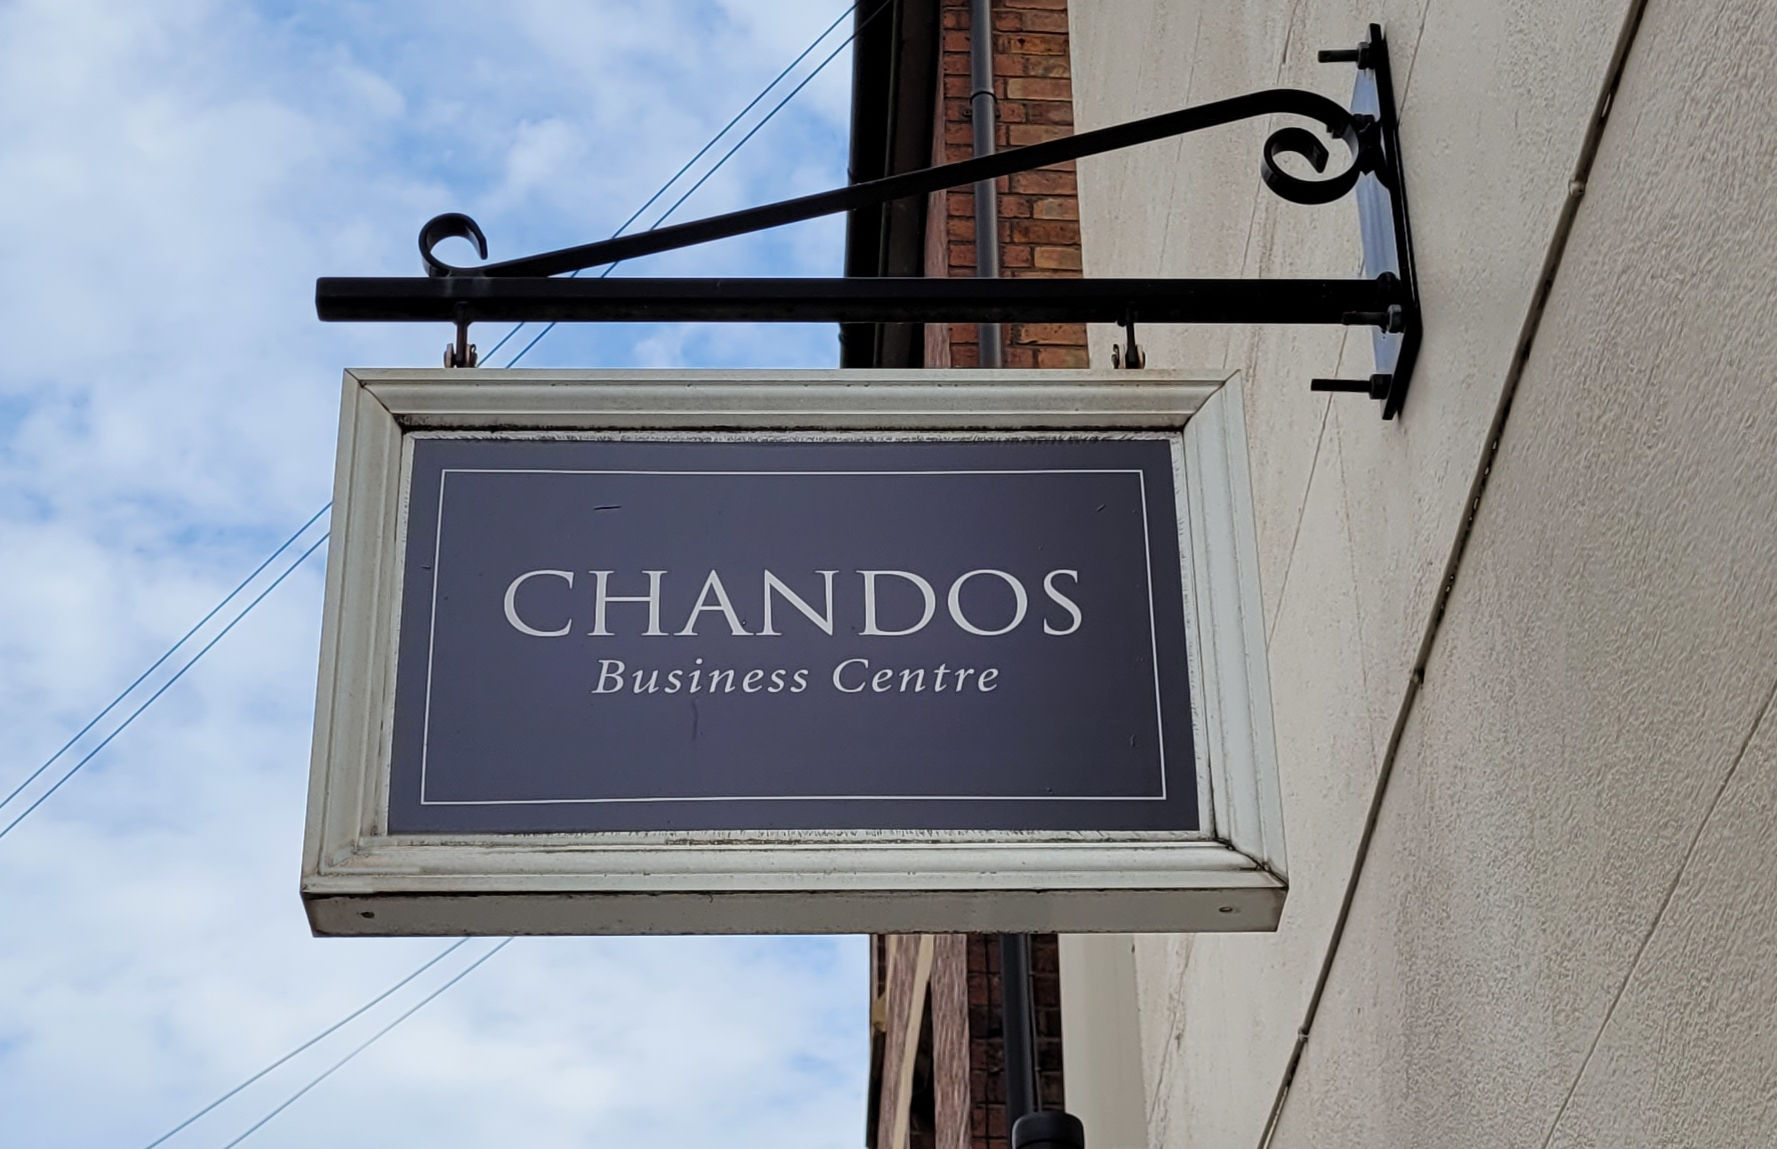 Chandos Business Centre sign